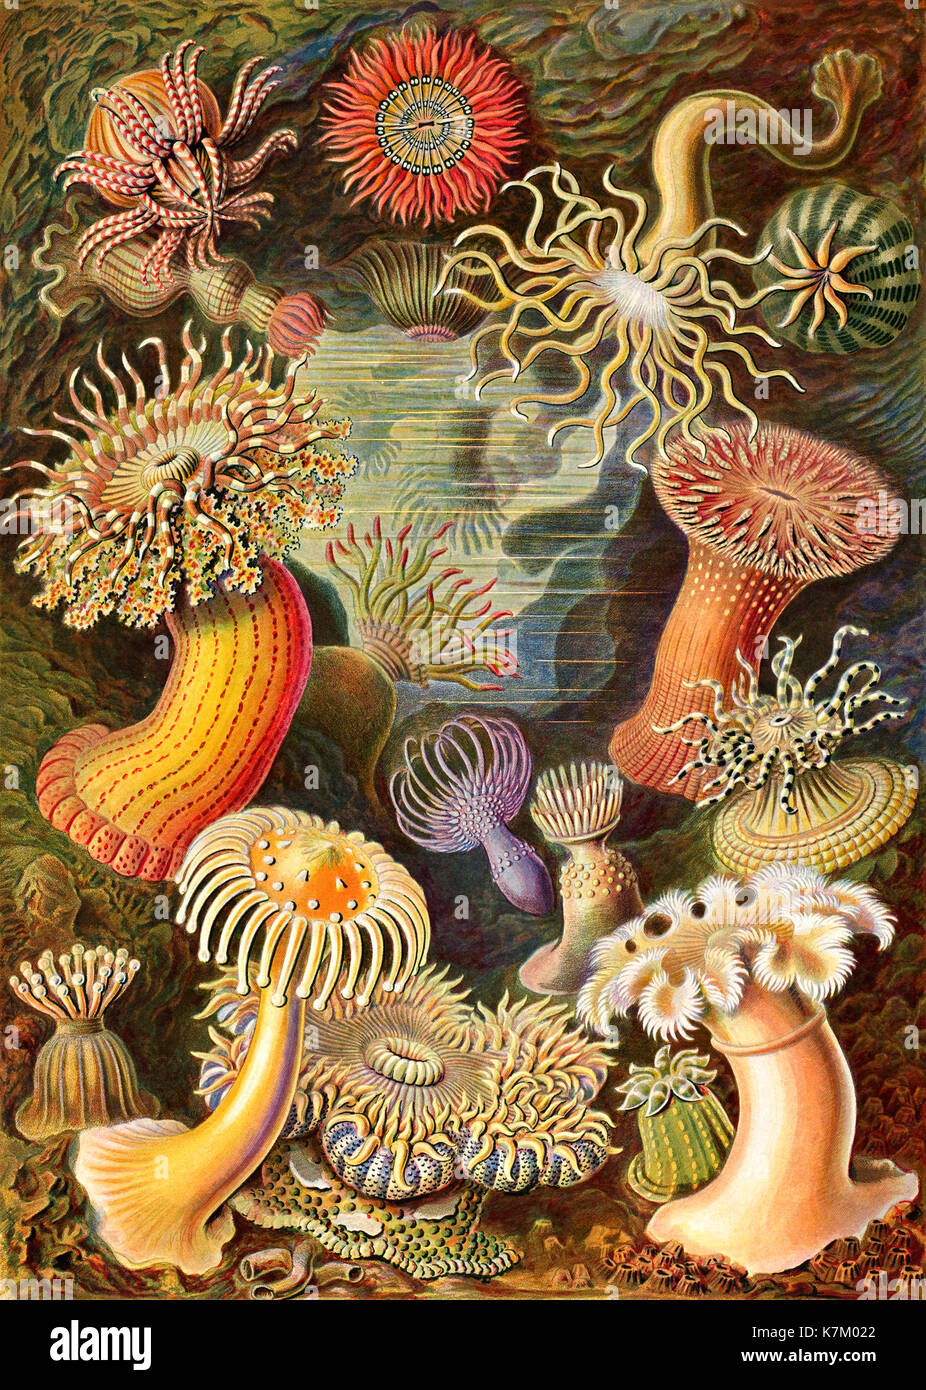 Ernst HAECKEL (1834-1919) biologiste allemand, médecin, naturaliste. Les anémones de mer de ses Kunstformen de Natur (formes d'art de la nature) ont publié 1904 Banque D'Images